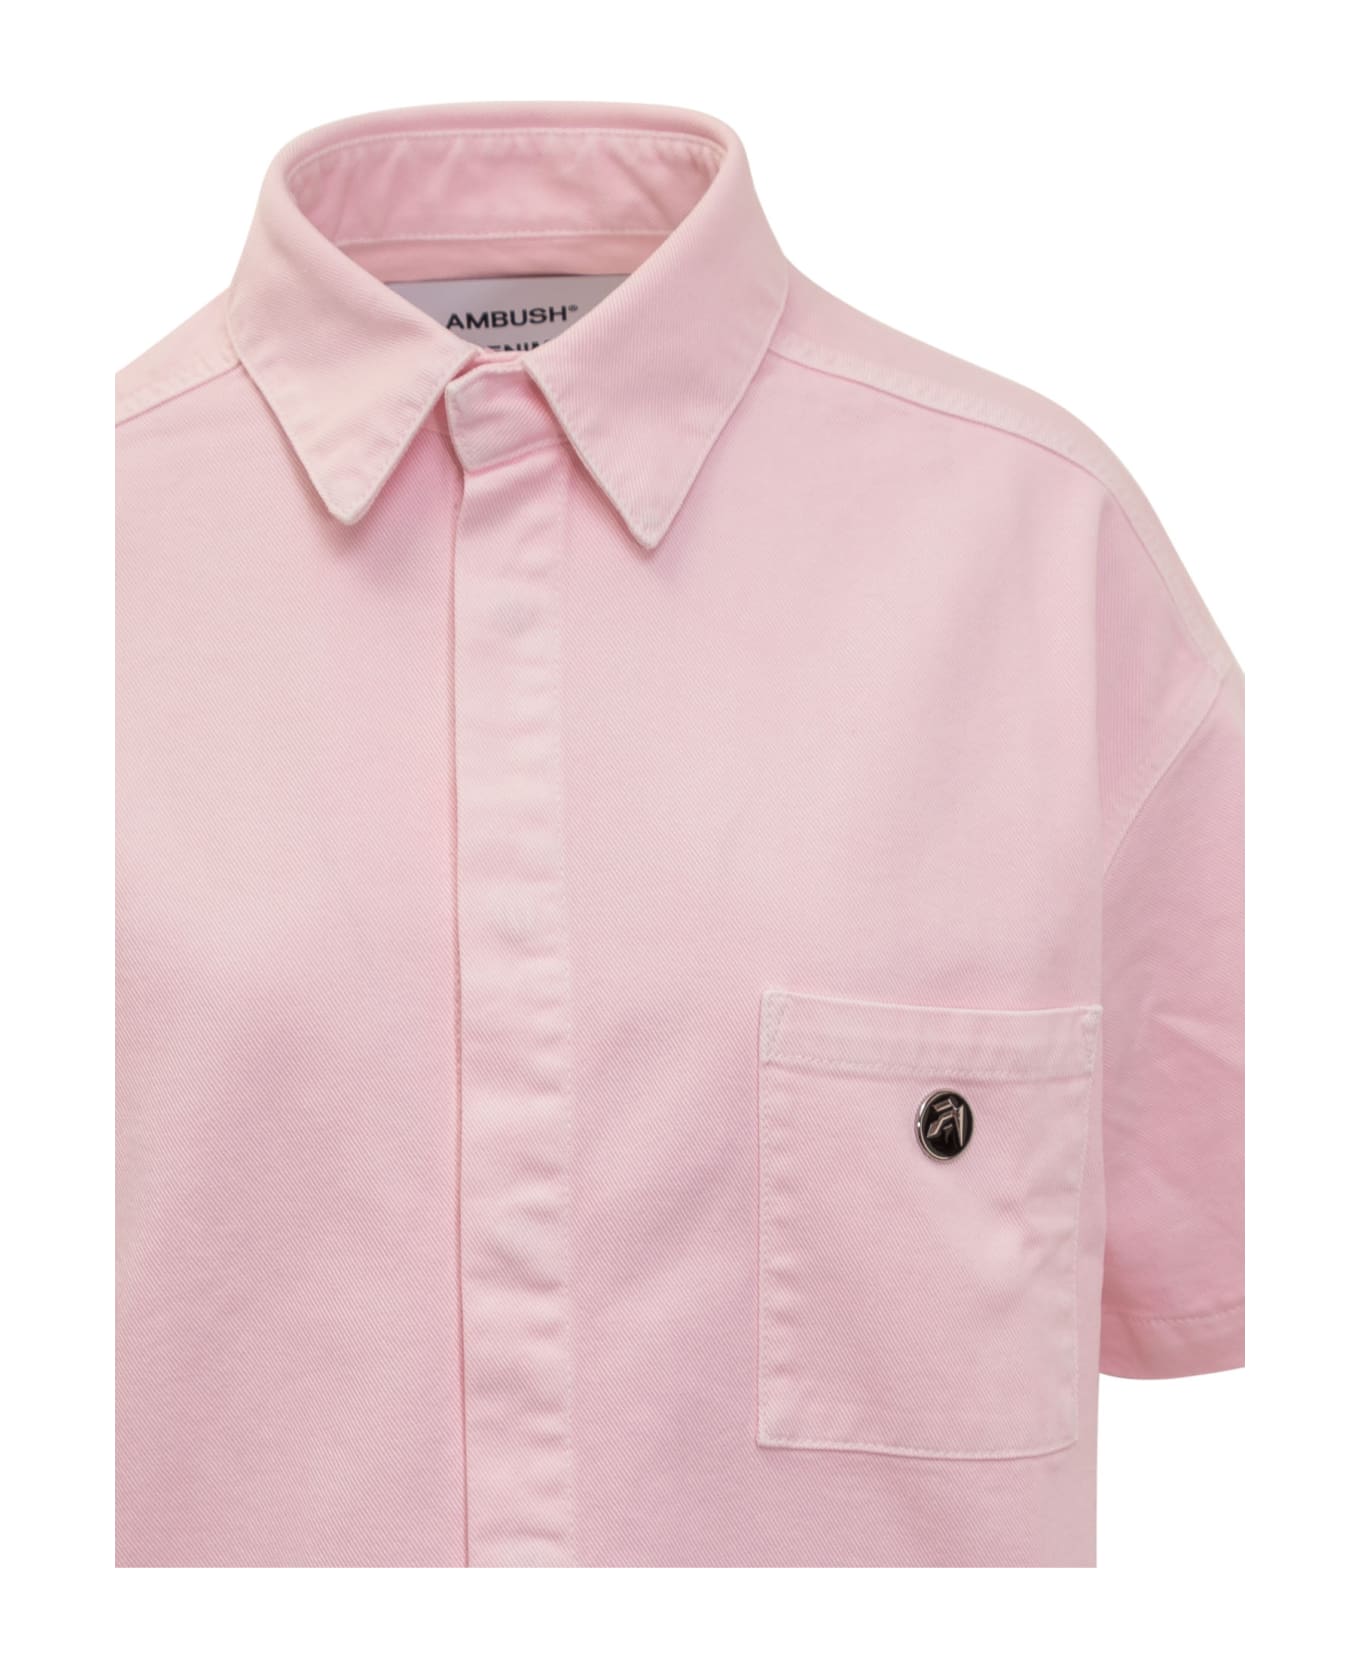 AMBUSH Boxy Fit Shirt With Logo - PINK